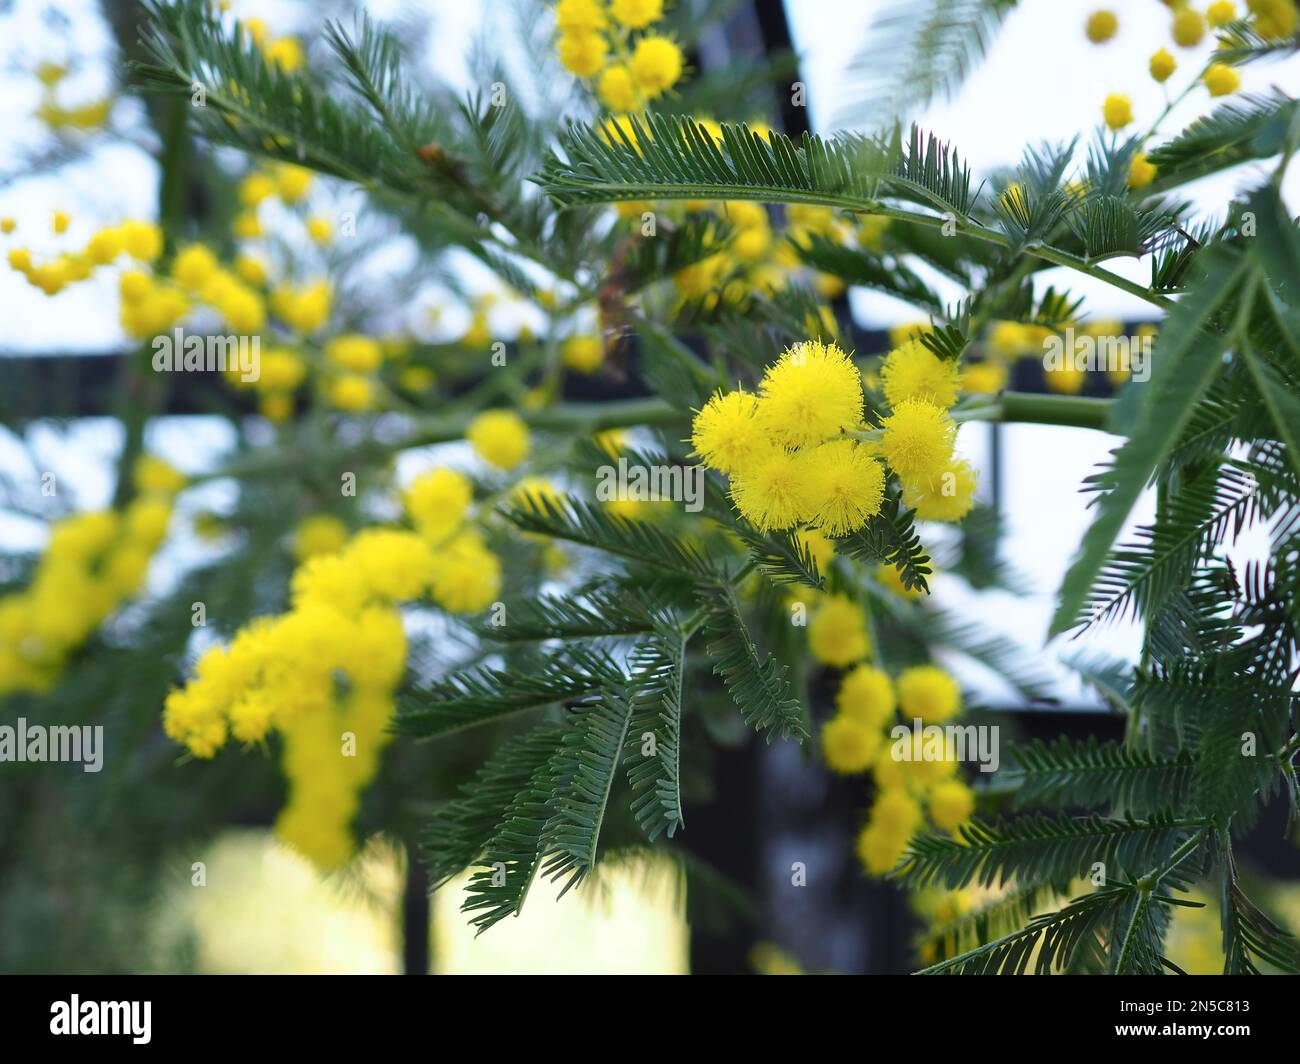 Primer plano de las flores amarillas de la planta de mimosa (Acacia dealbata) que crecen en un invernadero en febrero en el Reino Unido Foto de stock